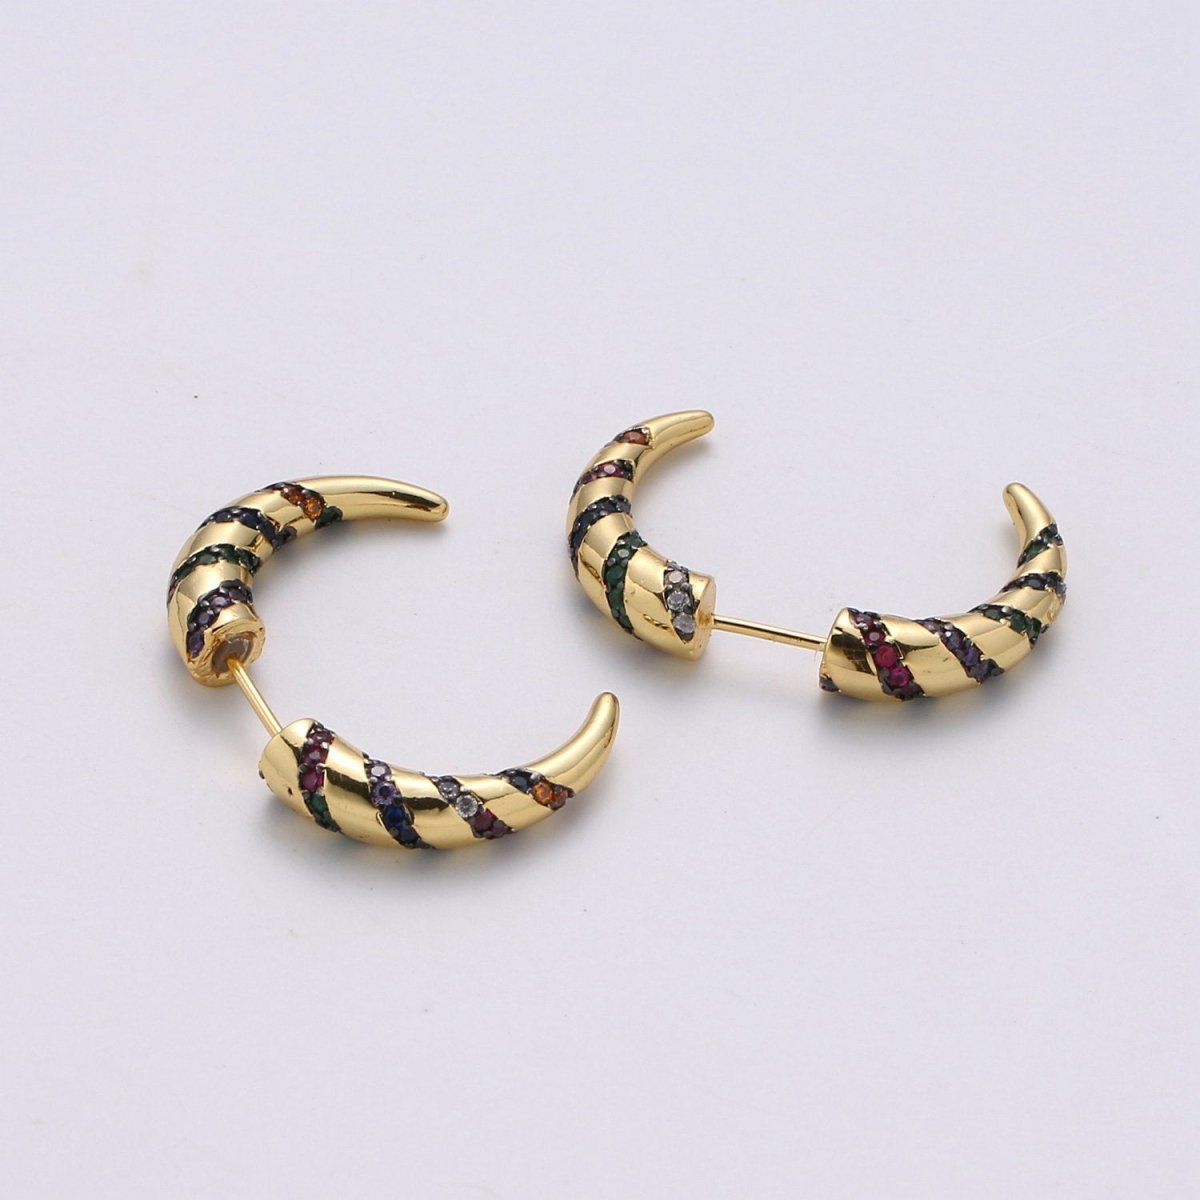 Gold Crescent moon earrings / Horn earrings / Half Moon Earrings / Celestial Stud earrings Micro Pave Earring Boho earrings Gift For Her, K-567 - DLUXCA